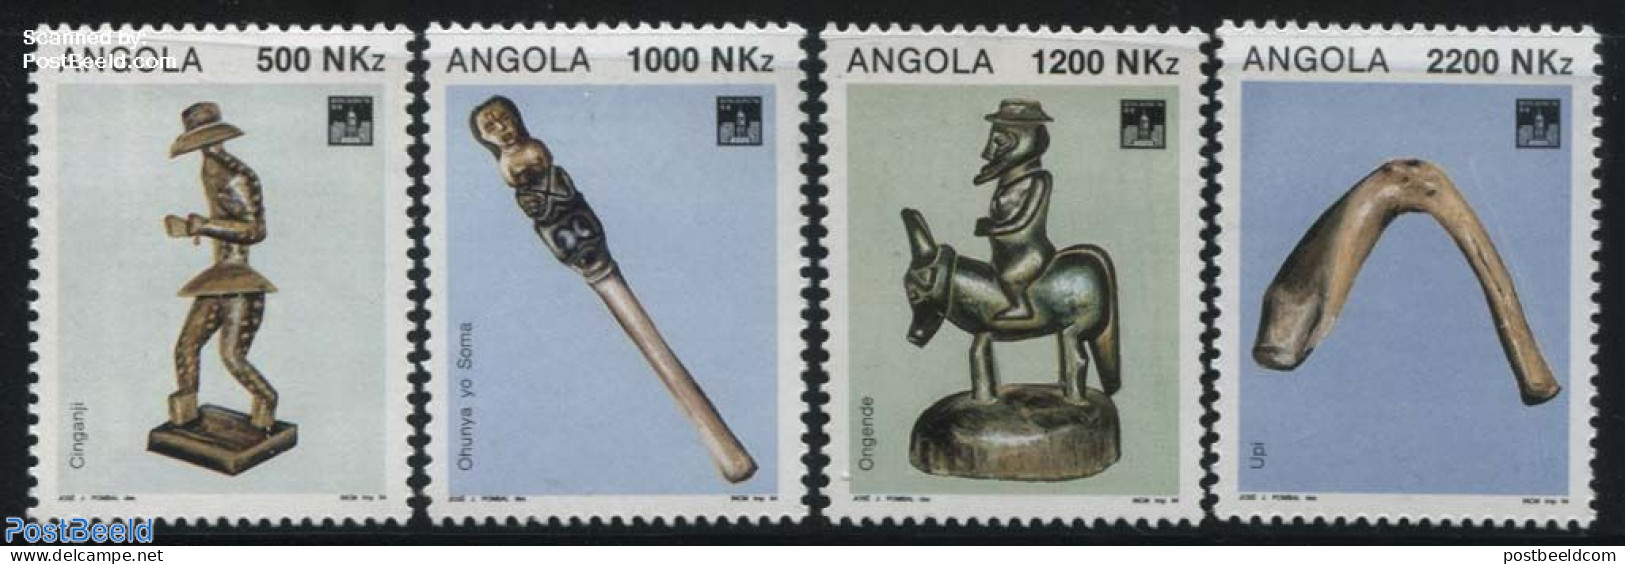 Angola 1994 Hong Kong 94 4v, Mint NH, Philately - Art - Art & Antique Objects - Sculpture - Scultura